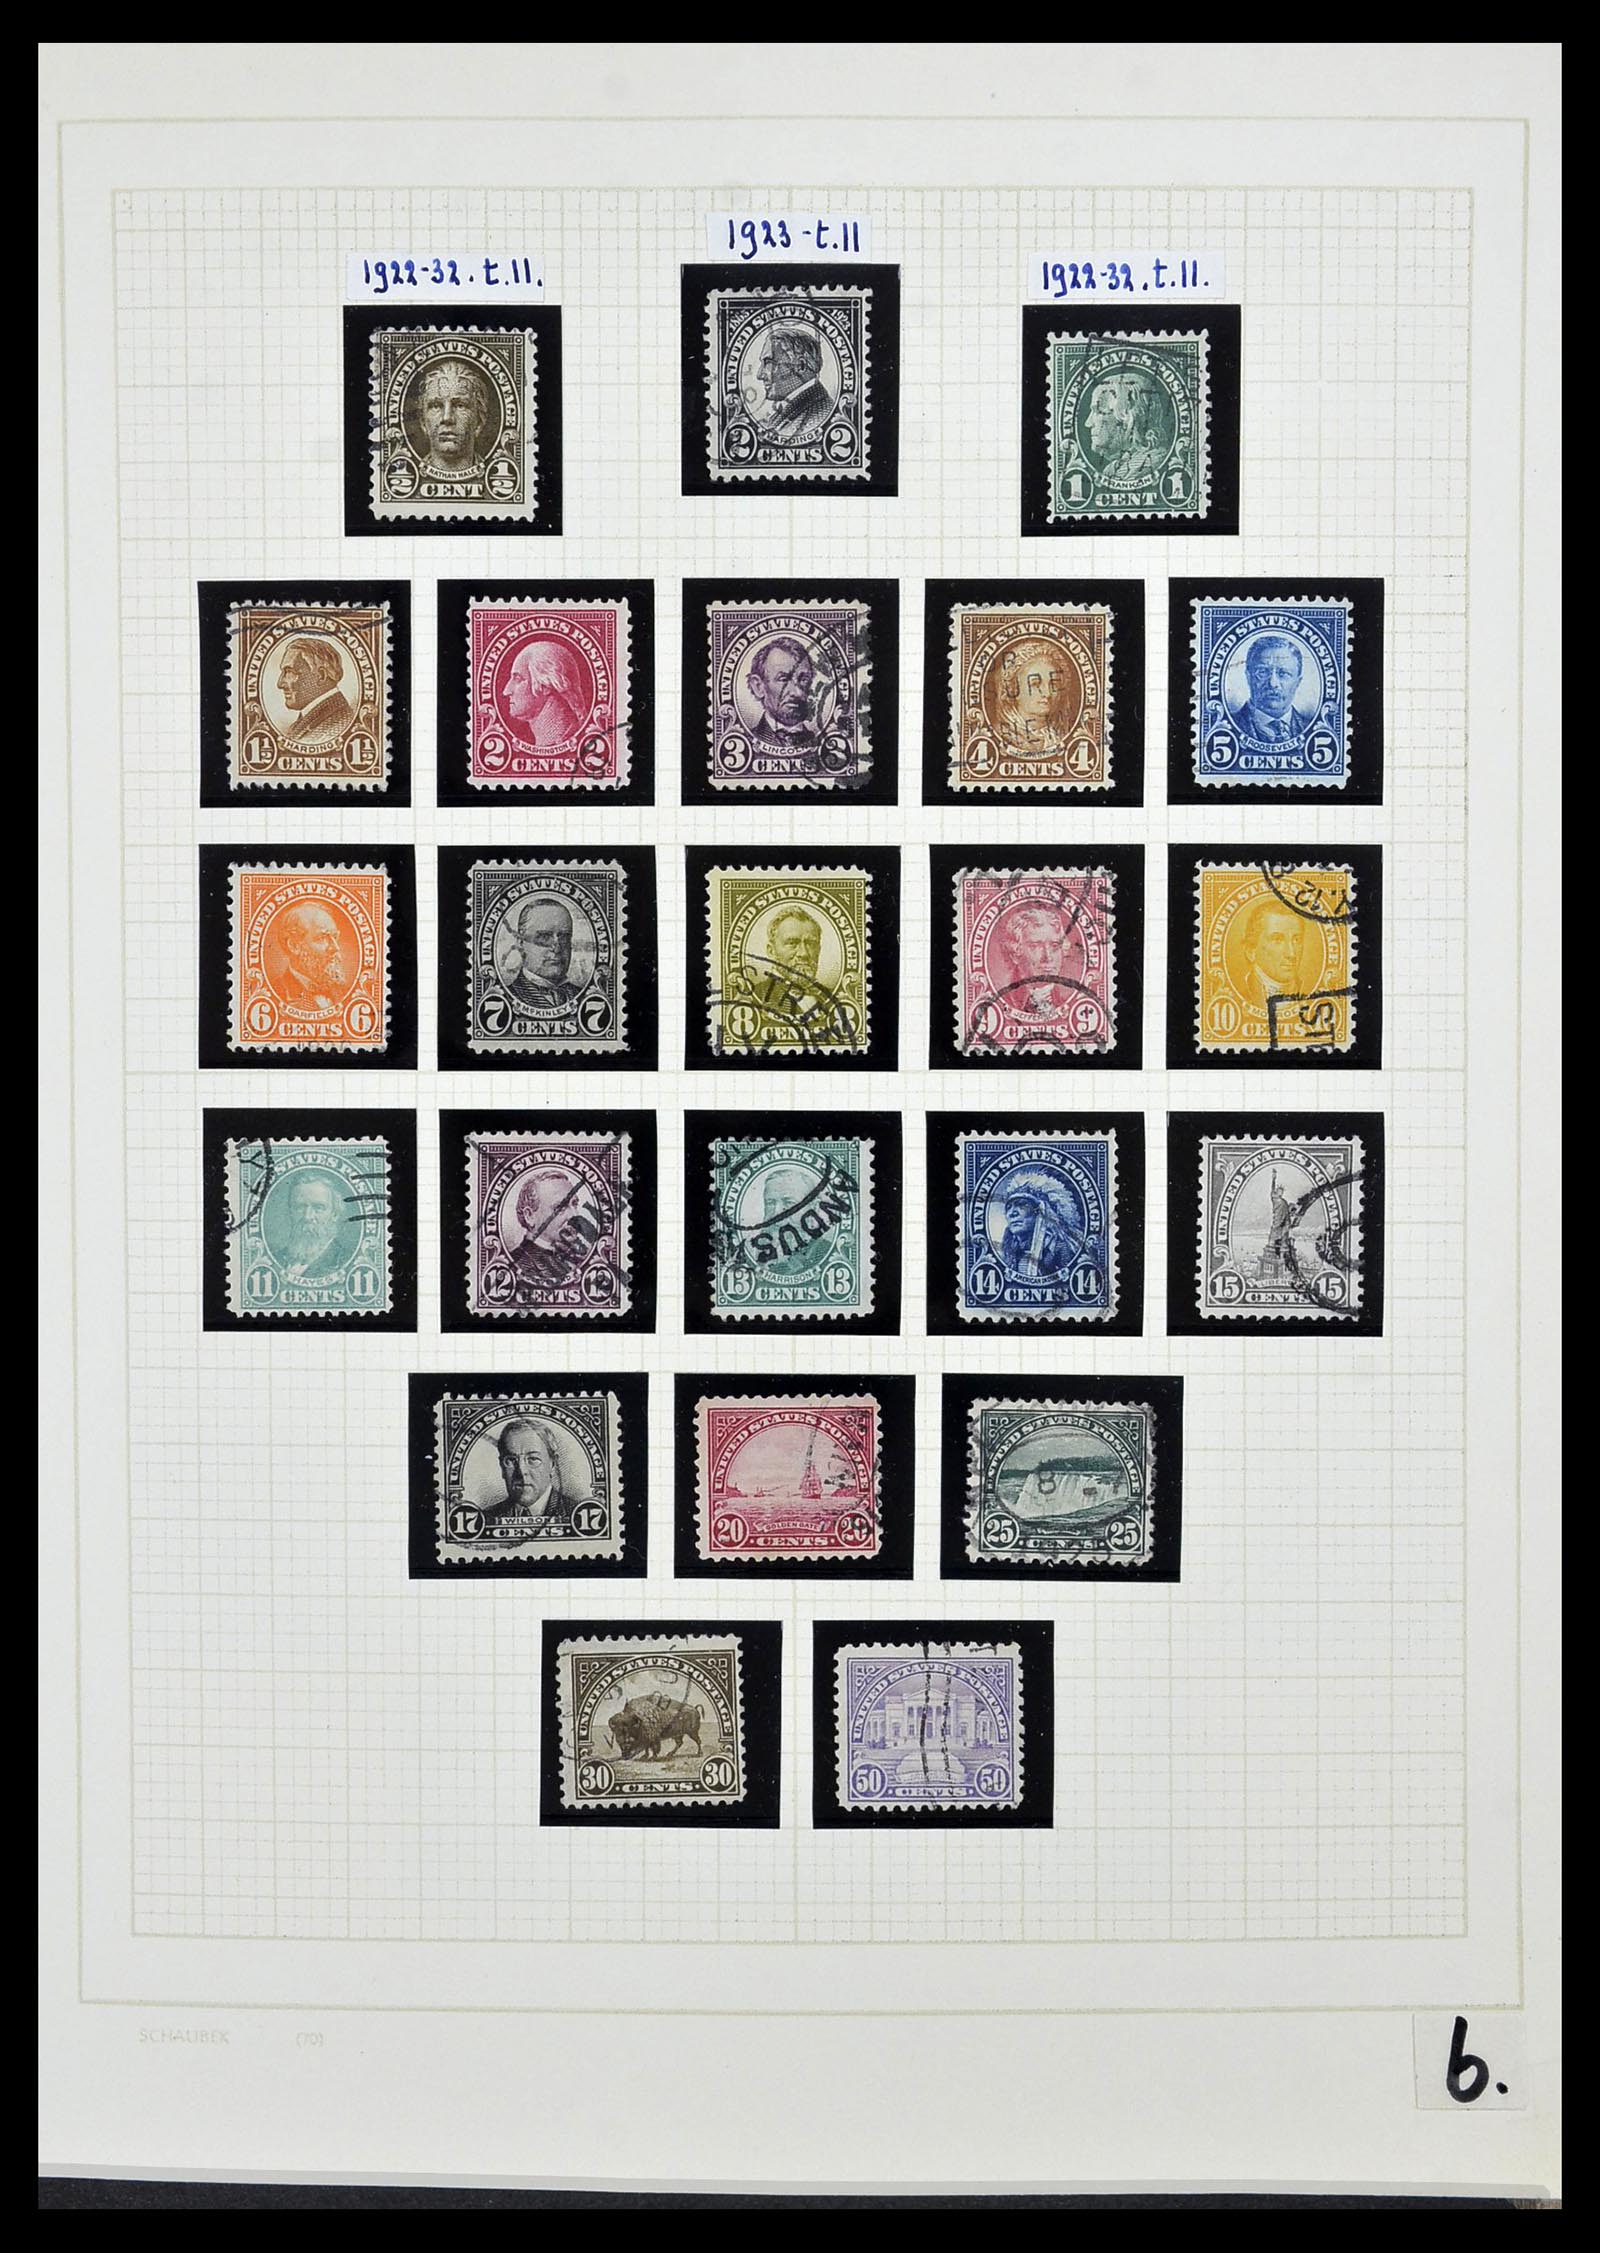 34525 022 - Stamp Collection 34525 USA 1851-1980.